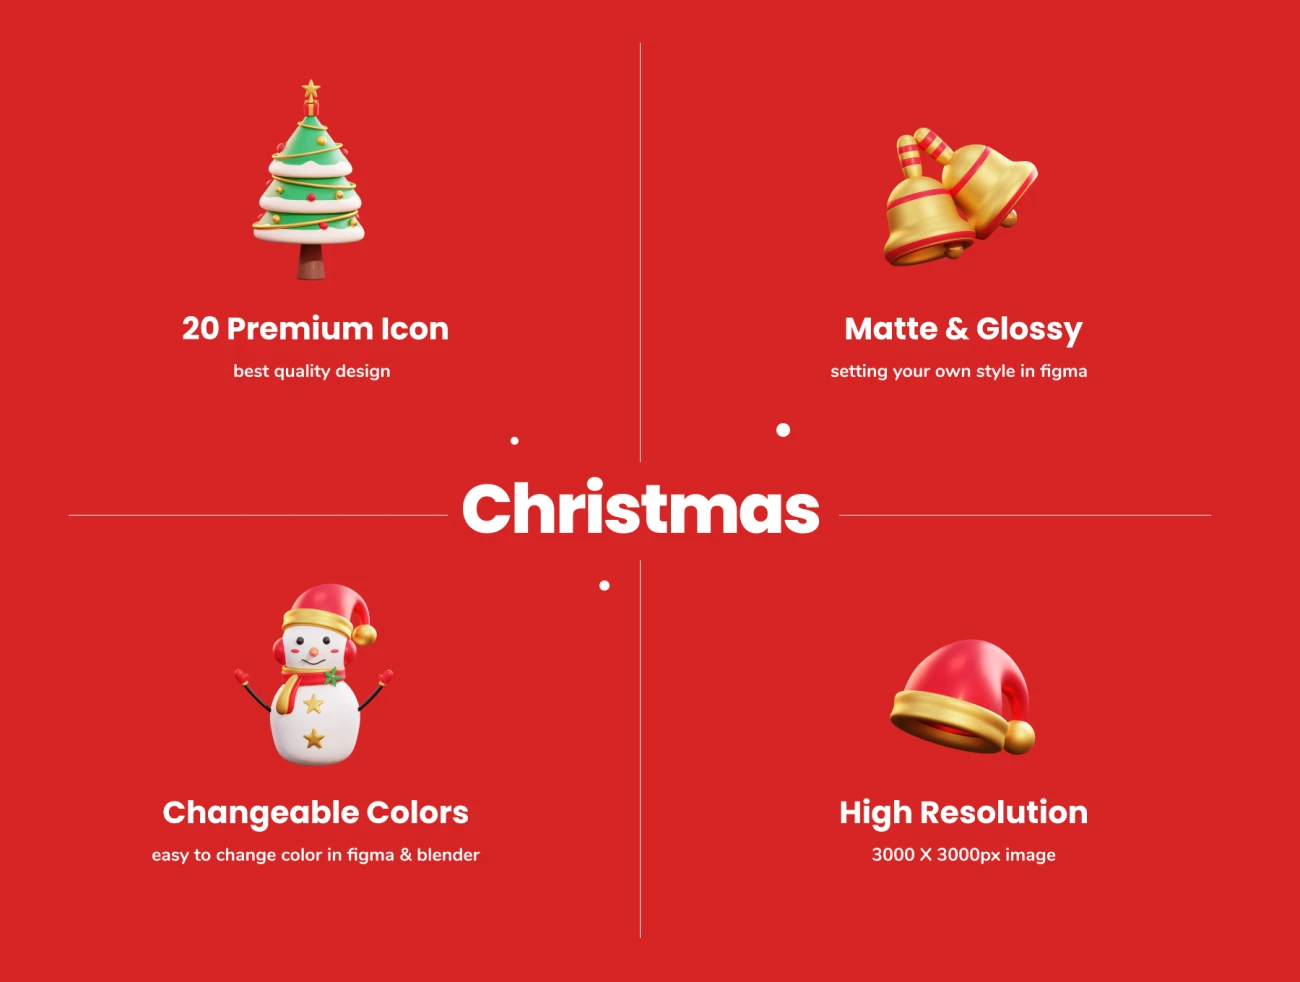 20款3D矢量圣诞节插画图标素材下载 Christmas – 3D Icon Premium Pack .blender .psd .figma插图3